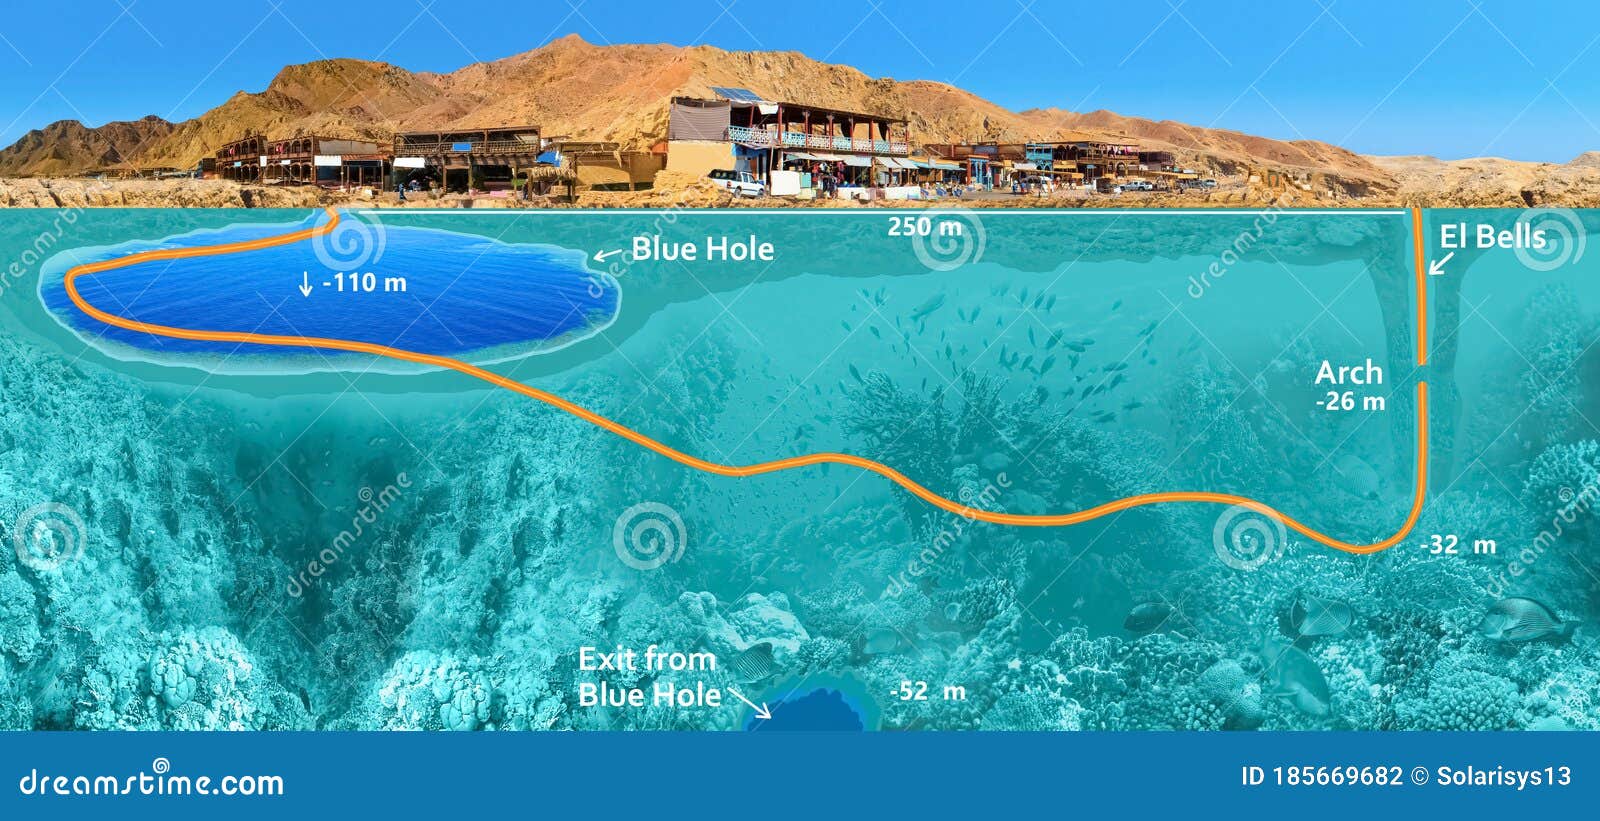 Blue Hole Red Sea Egypt